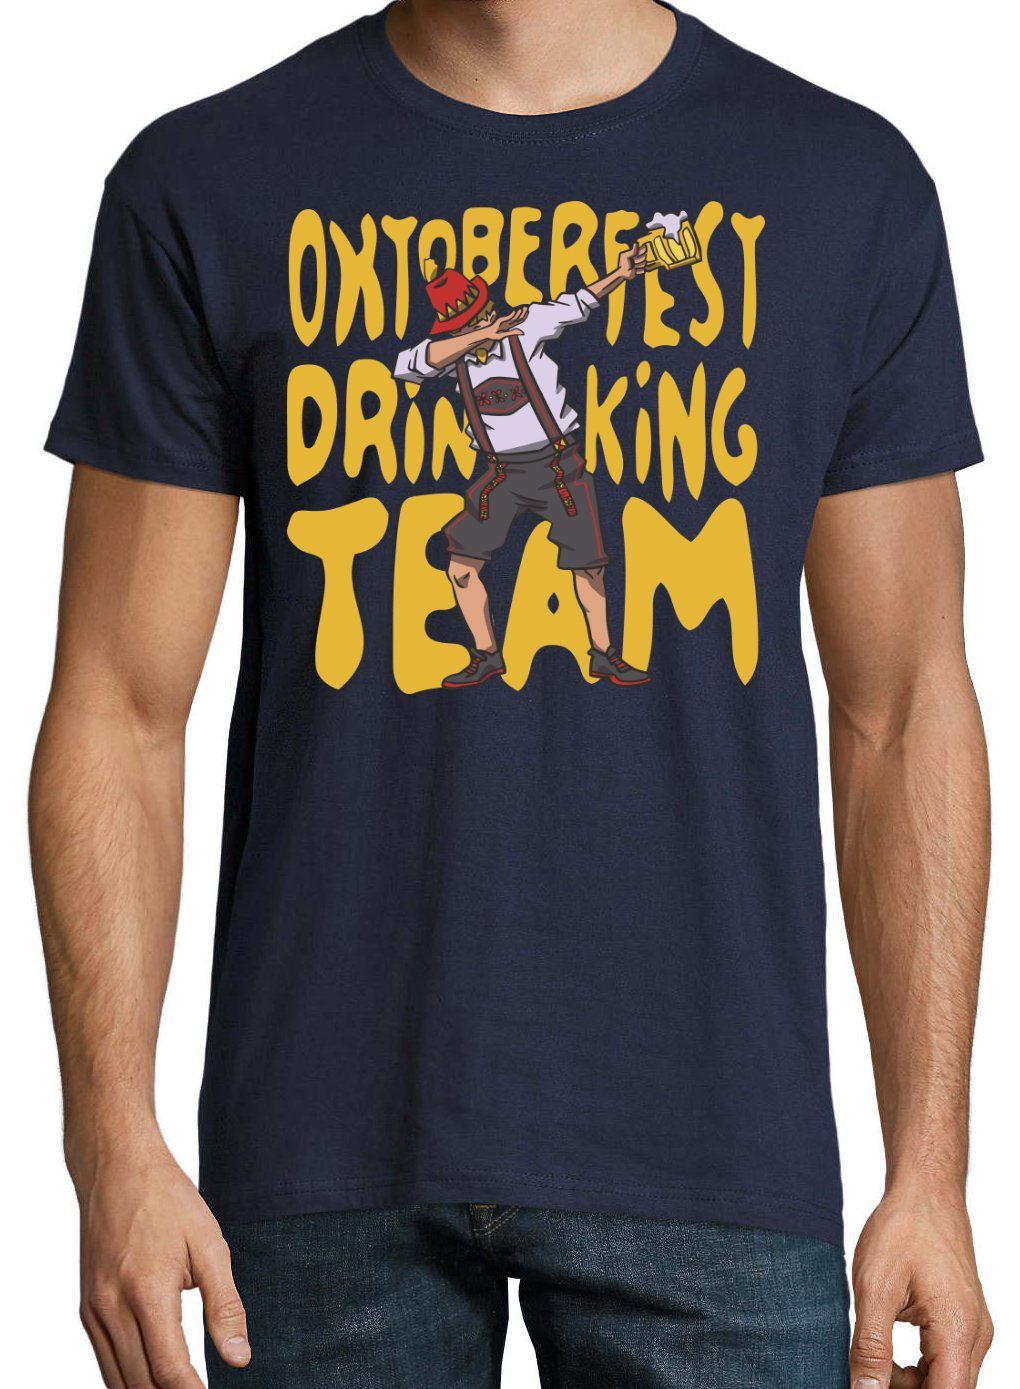 Print-Shirt mit Oktoberfest und T-Shirt Designz Team Herren Print Youth Navyblau Trachten lustigem Spruch Drinking